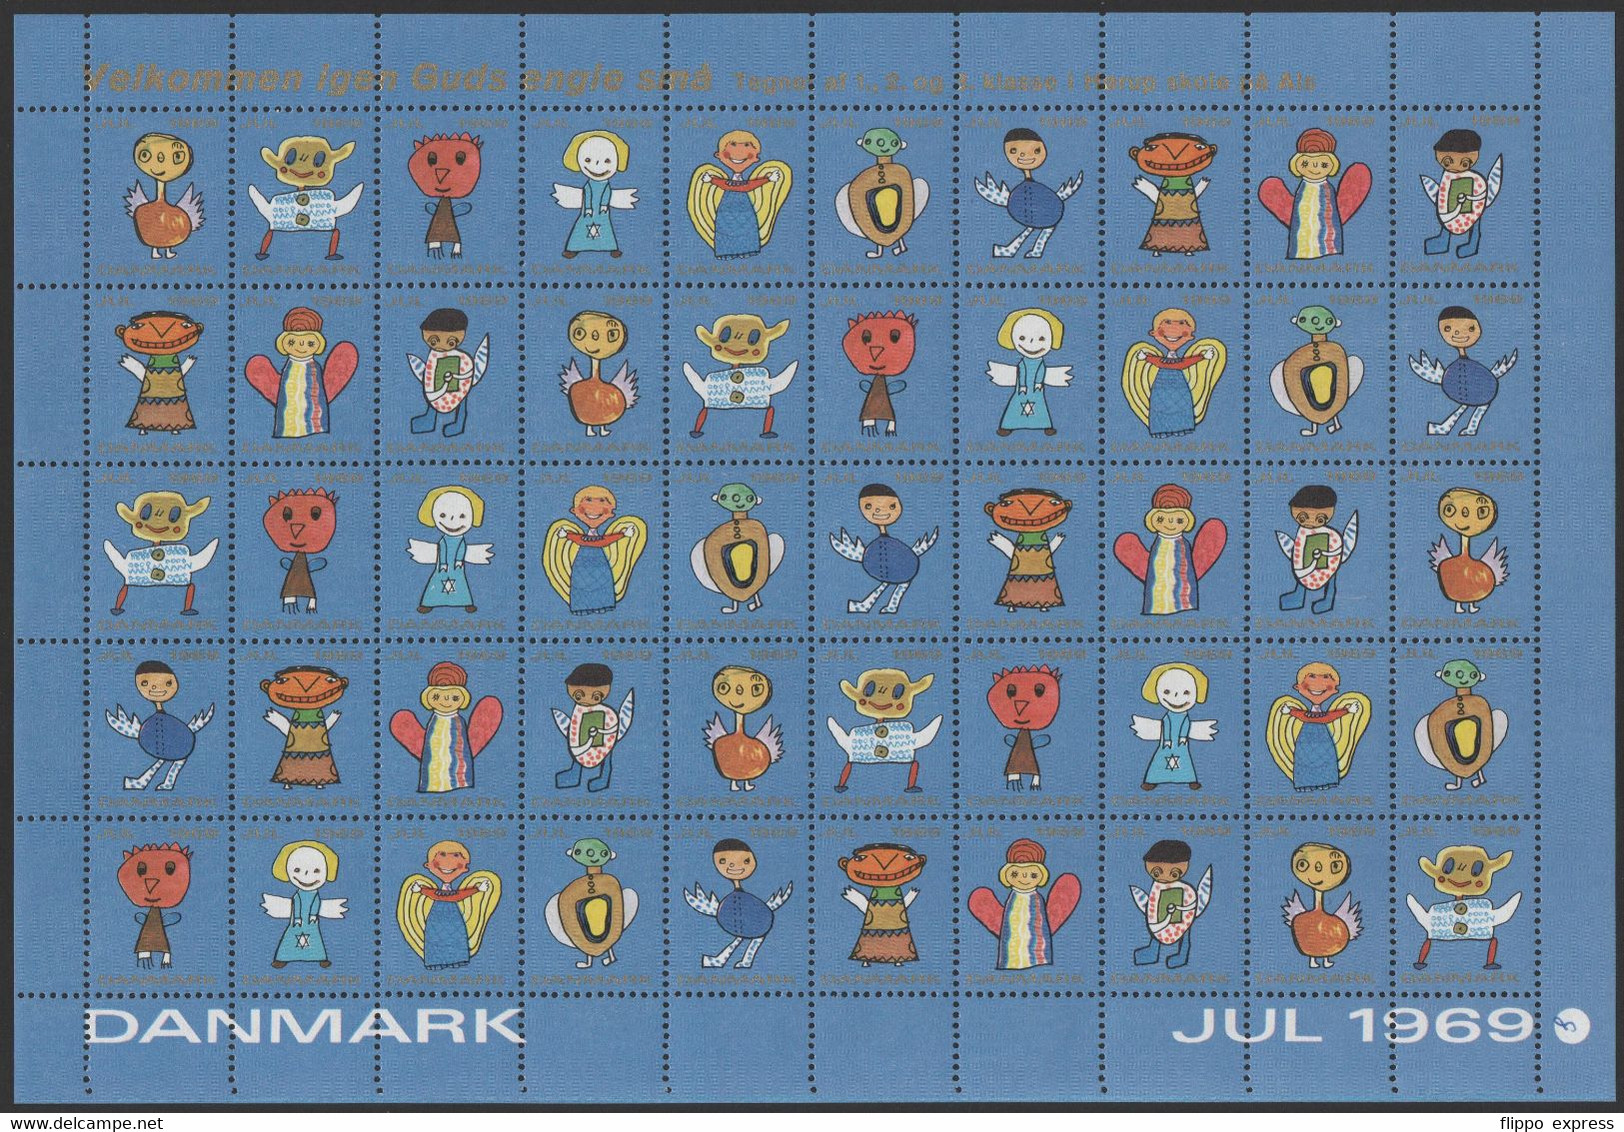 Denmark1969 Julemaerke, Mint Sheet Of 50 Stamps, Unfolded. - Full Sheets & Multiples